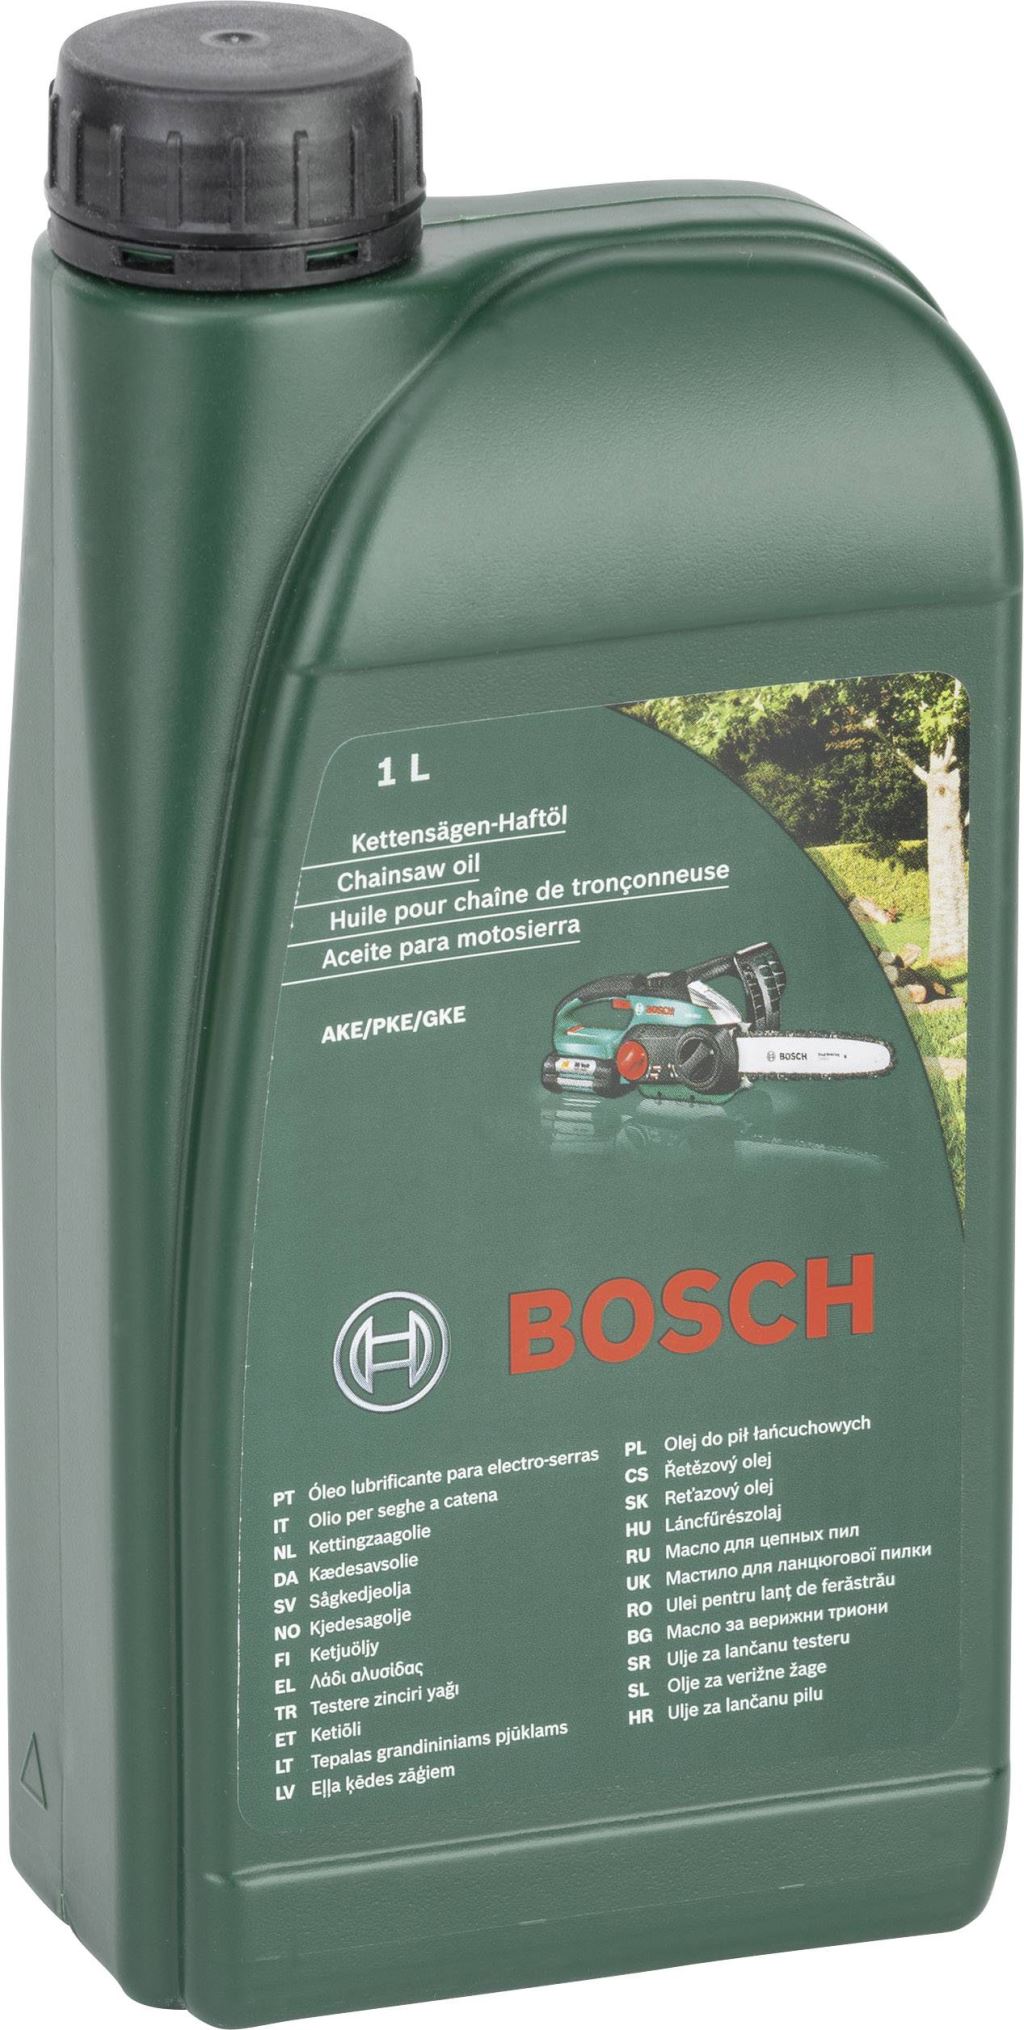 Bosch 2607000181 láncfűrész olaj 1L